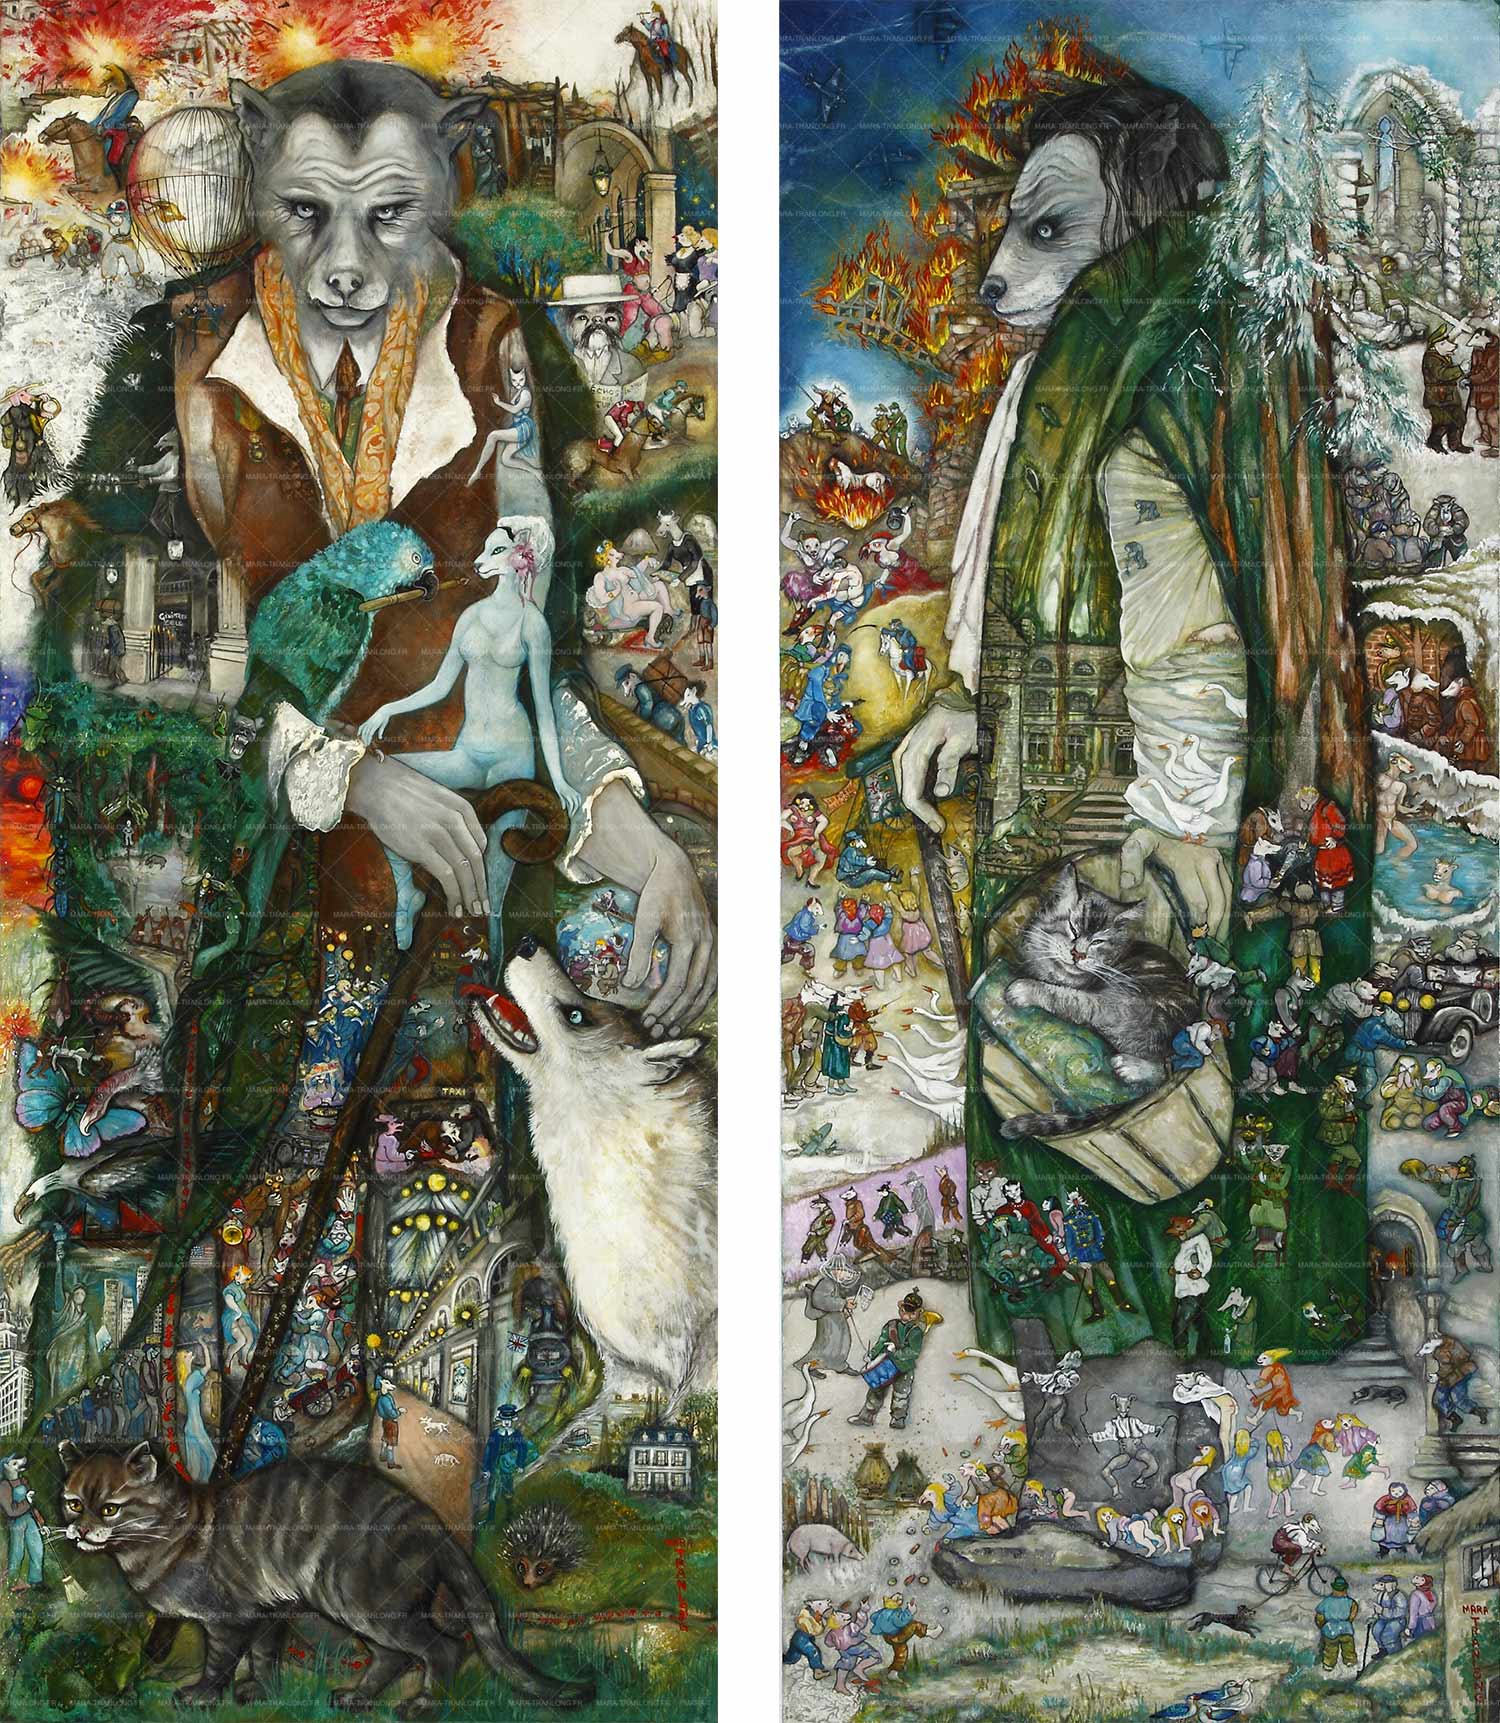 Mara Tranlong - Collection "Mon homage à Céline" - Titre : Le long voyage et Le guêpier prusco - Acrylique sur bois 50 cm x 120 cm - Année 2010 - 2011